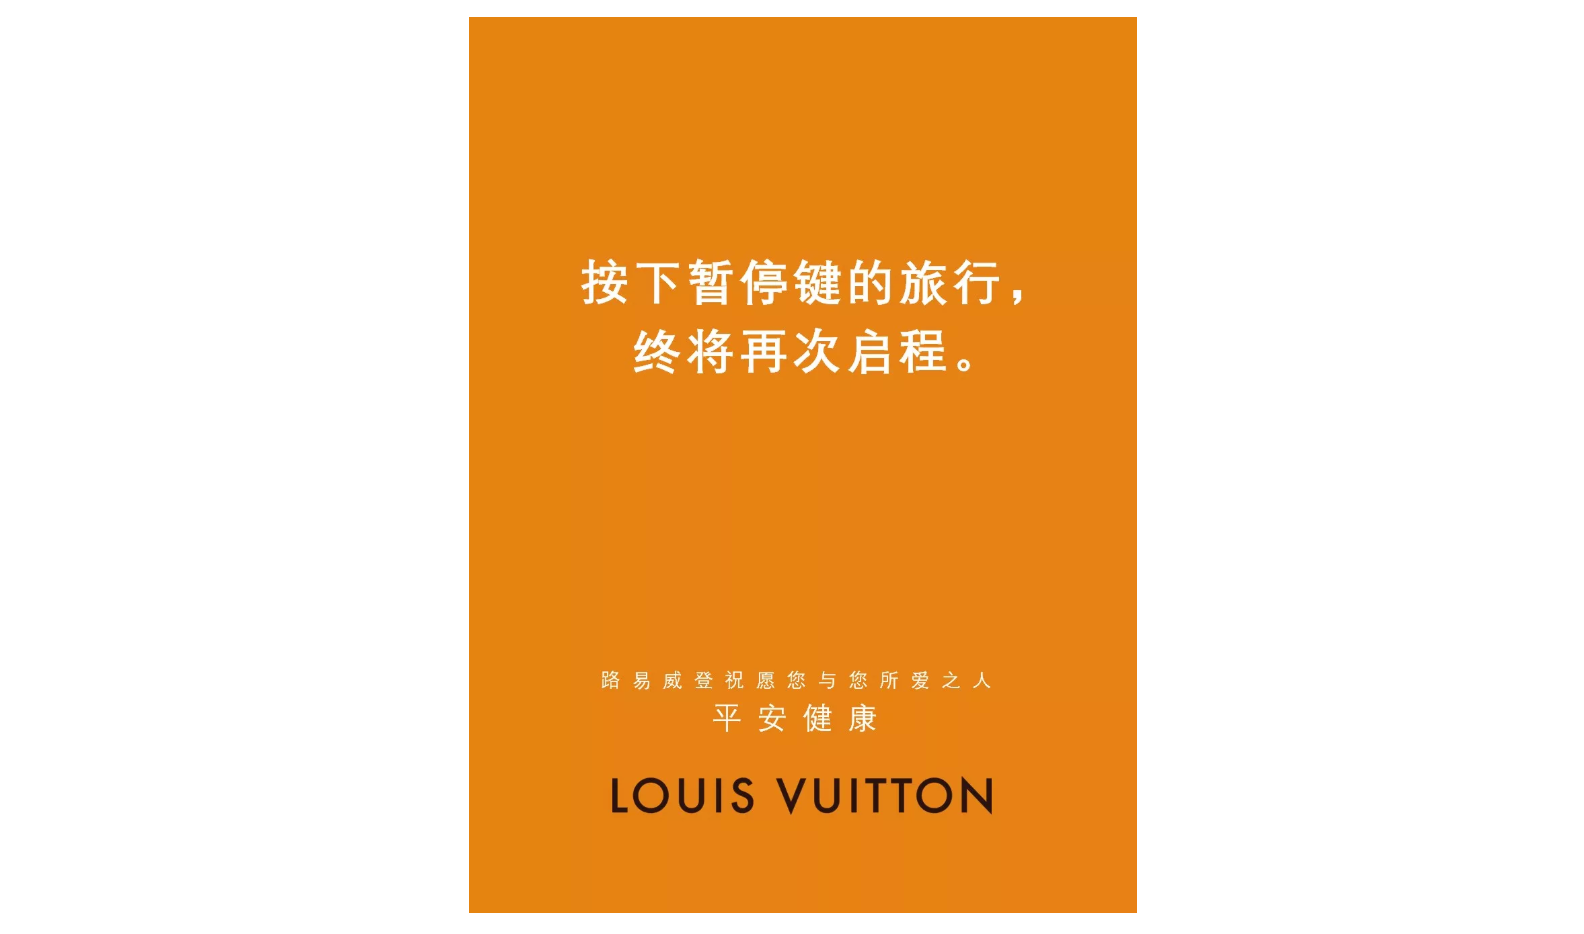 Louis Vuitton WeChat post.